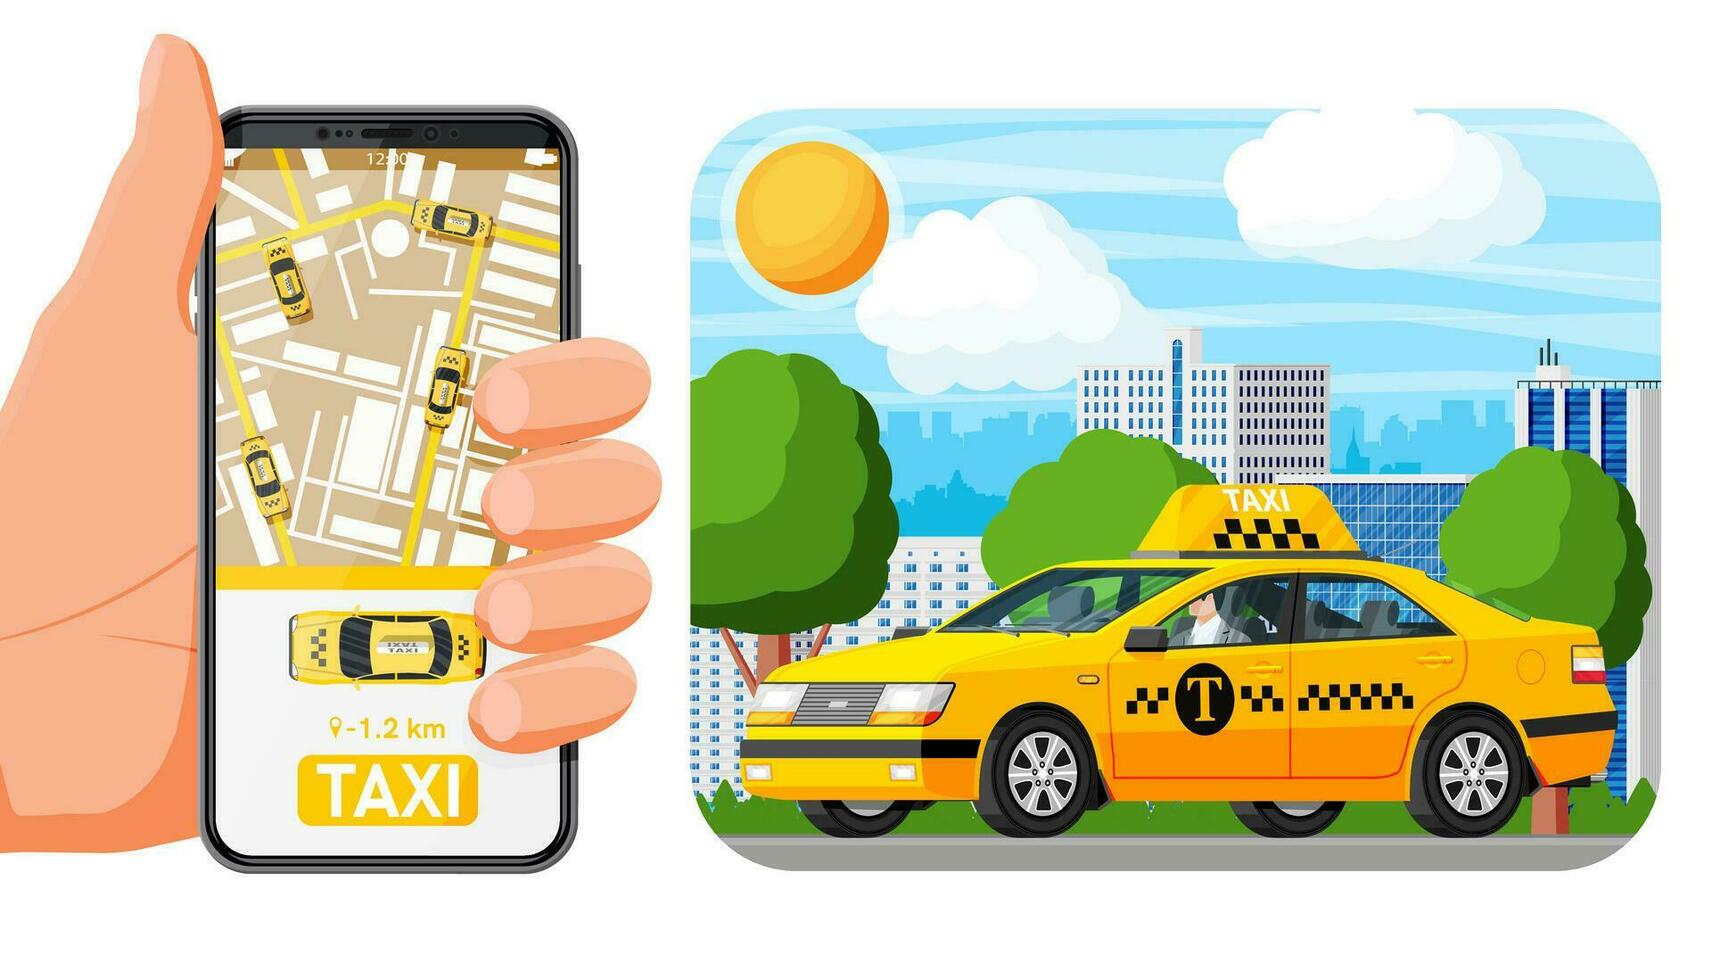 Đặt xe Taxi Nội Bài chưa bao giờ dễ đến thế: Thao tác online, giá niêm yết, đa dạng loại xe - ảnh 1